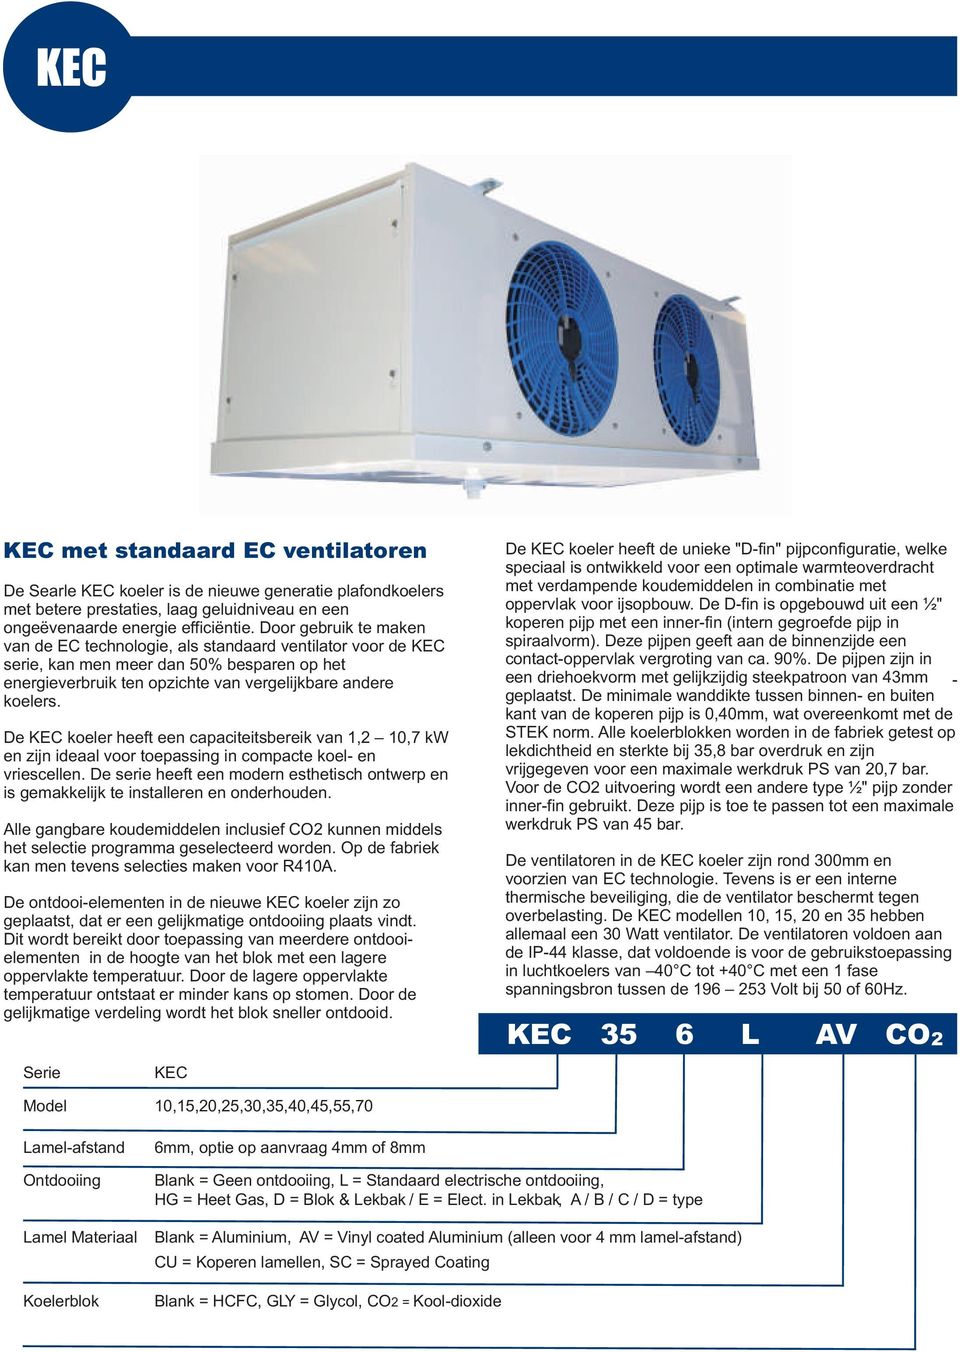 De KEC koeler heeft een capaciteitsbereik van, 0,7 k en zijn ideaal voor toepassing in compacte koel- en vriescellen.